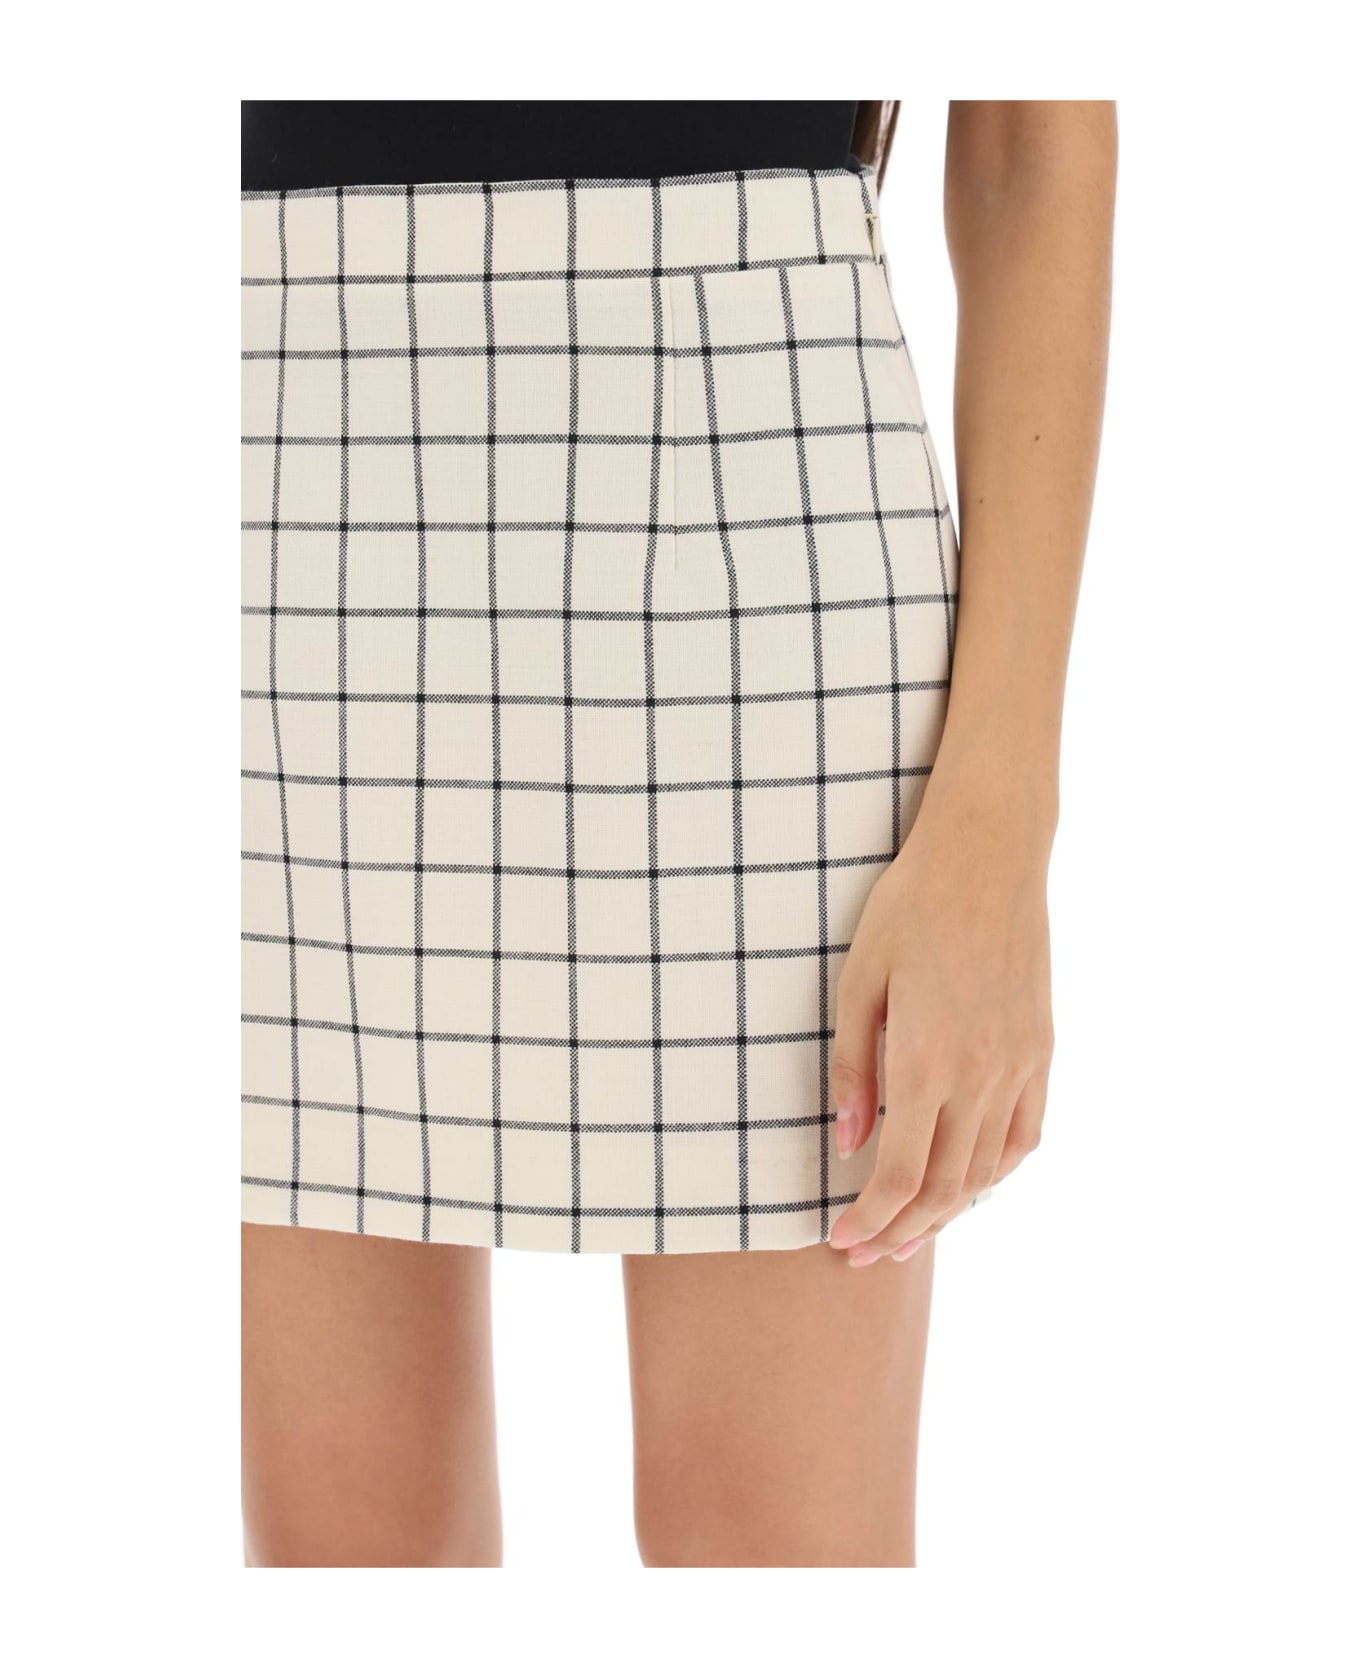 Marni Check Wool Mini Skirt - STONE WHITE (White)